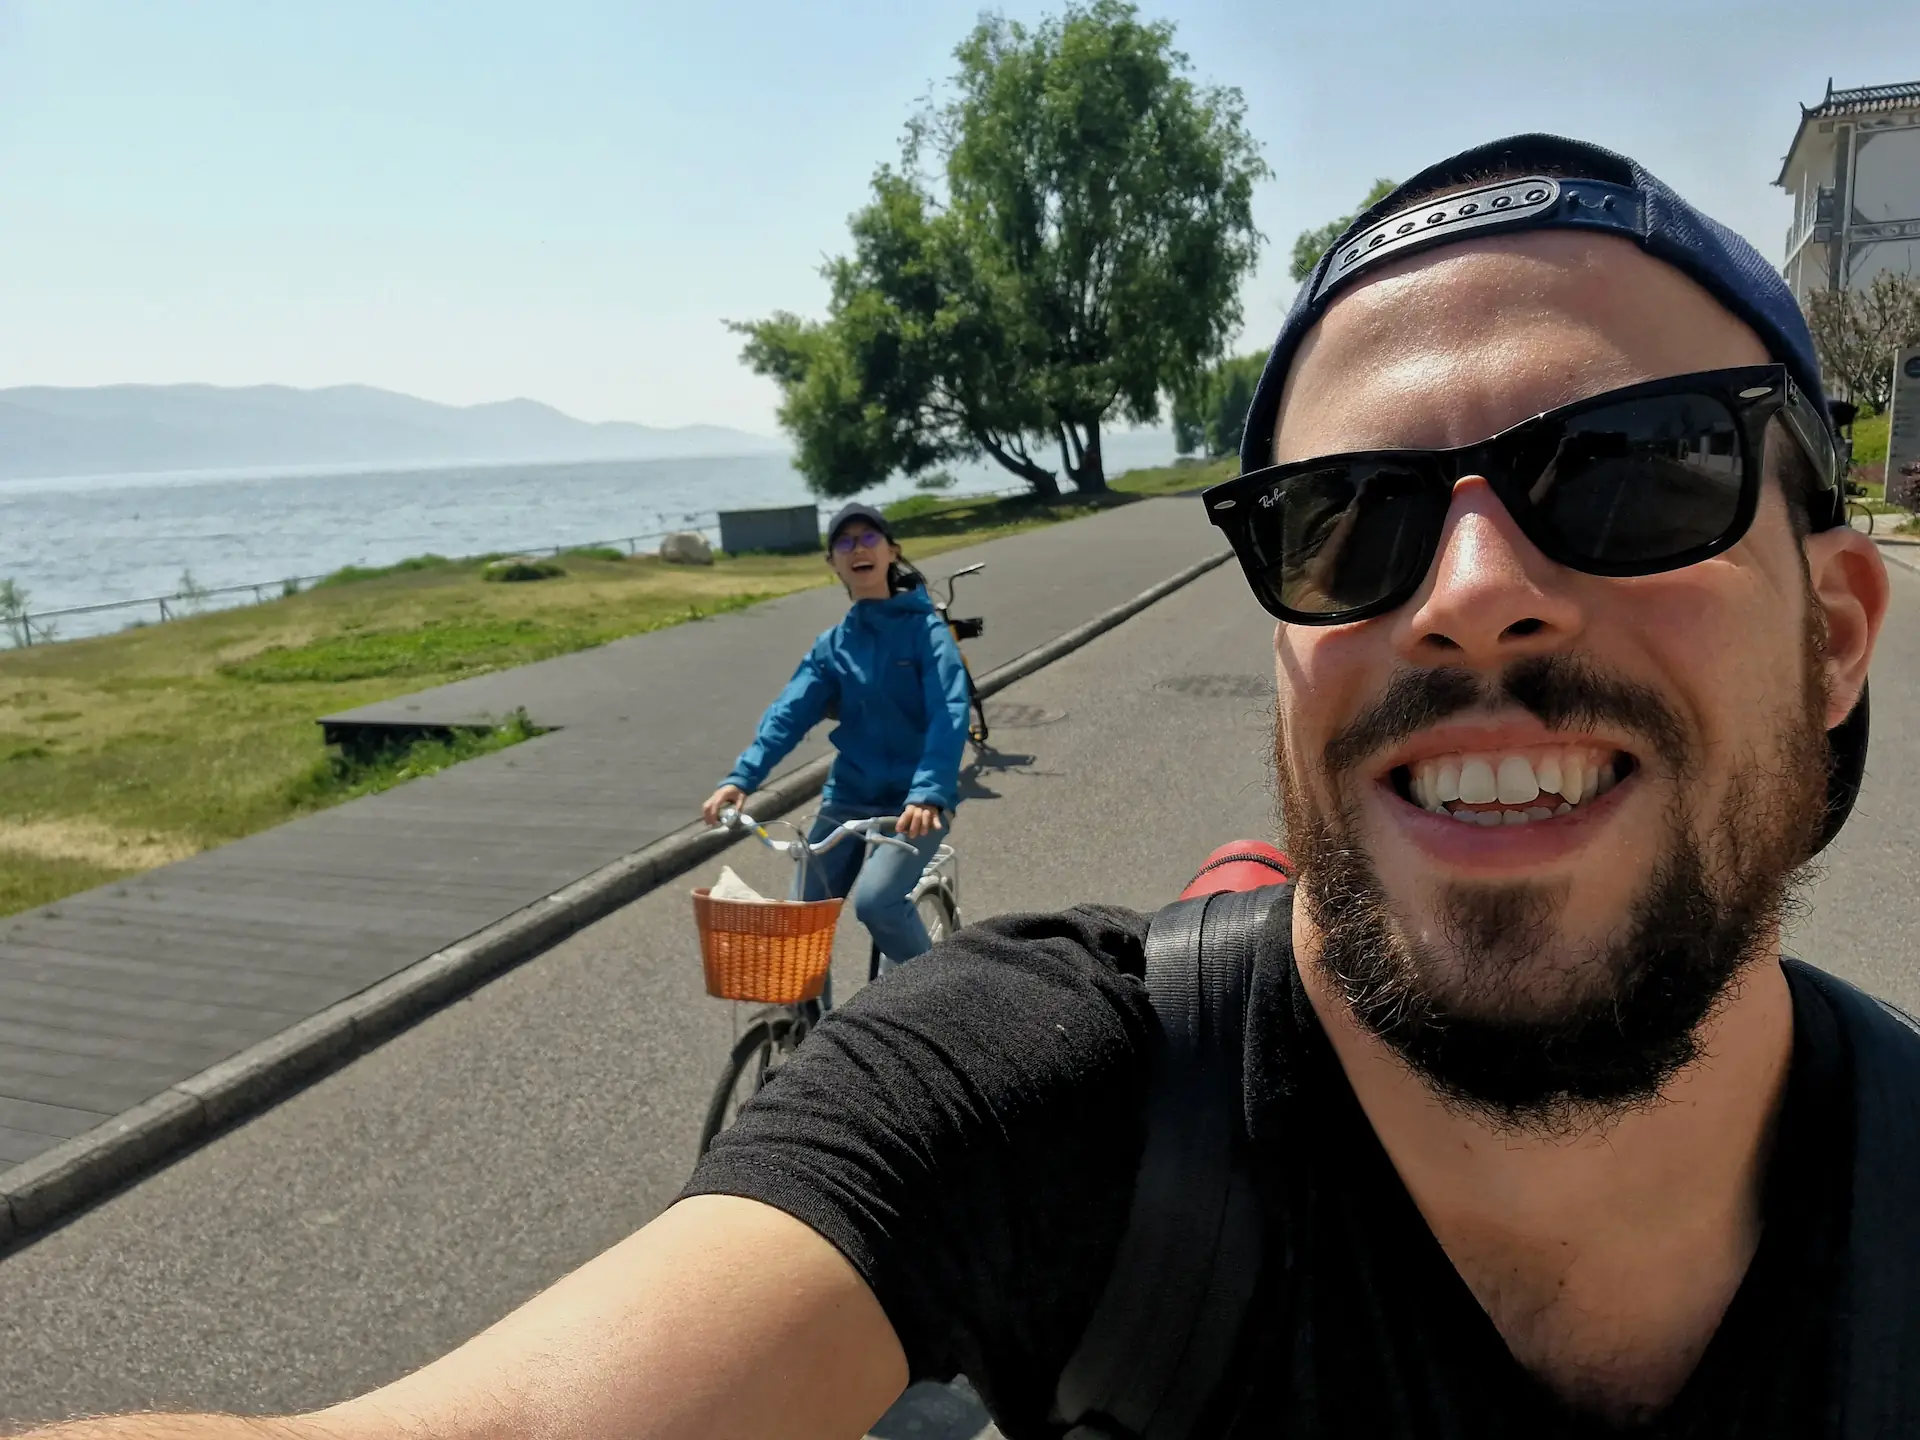 Robin et Clara à vélo se prennent en selfie au bord du lac. Ils ont de grands sourires.